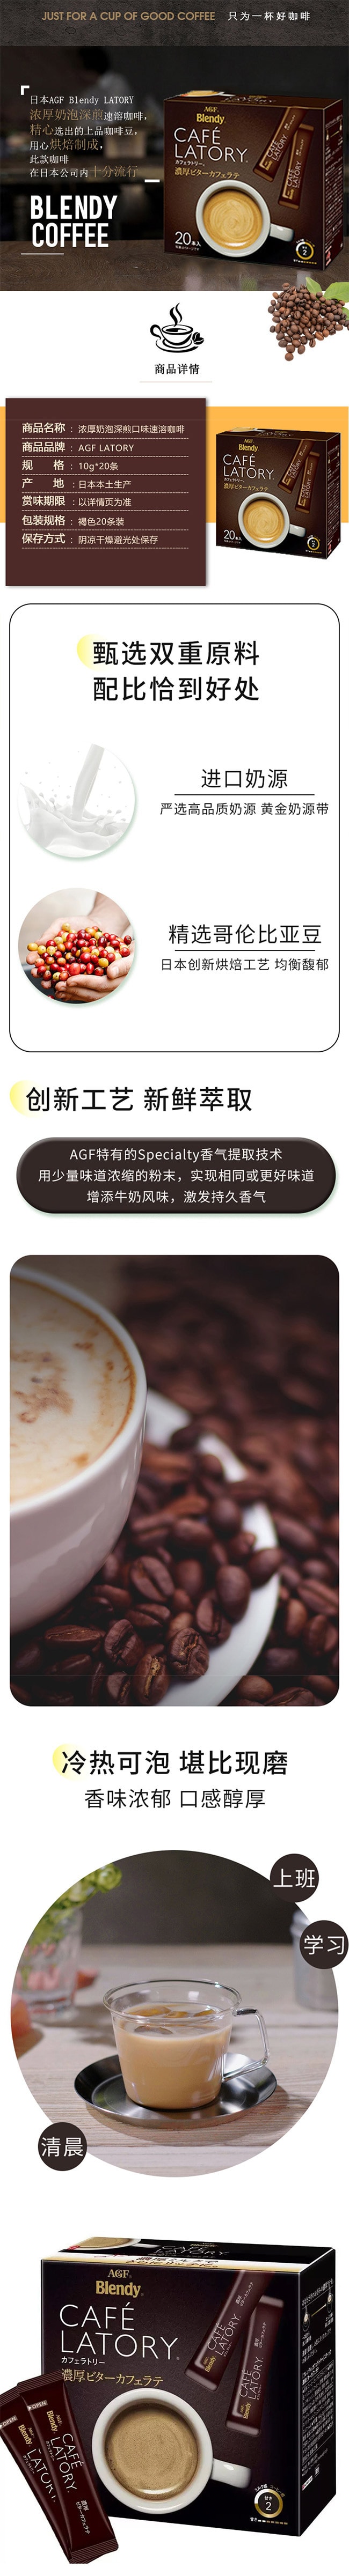 【日本直效郵件】AGF CAFE LATORY 醇厚微苦拿鐵咖啡 20條入